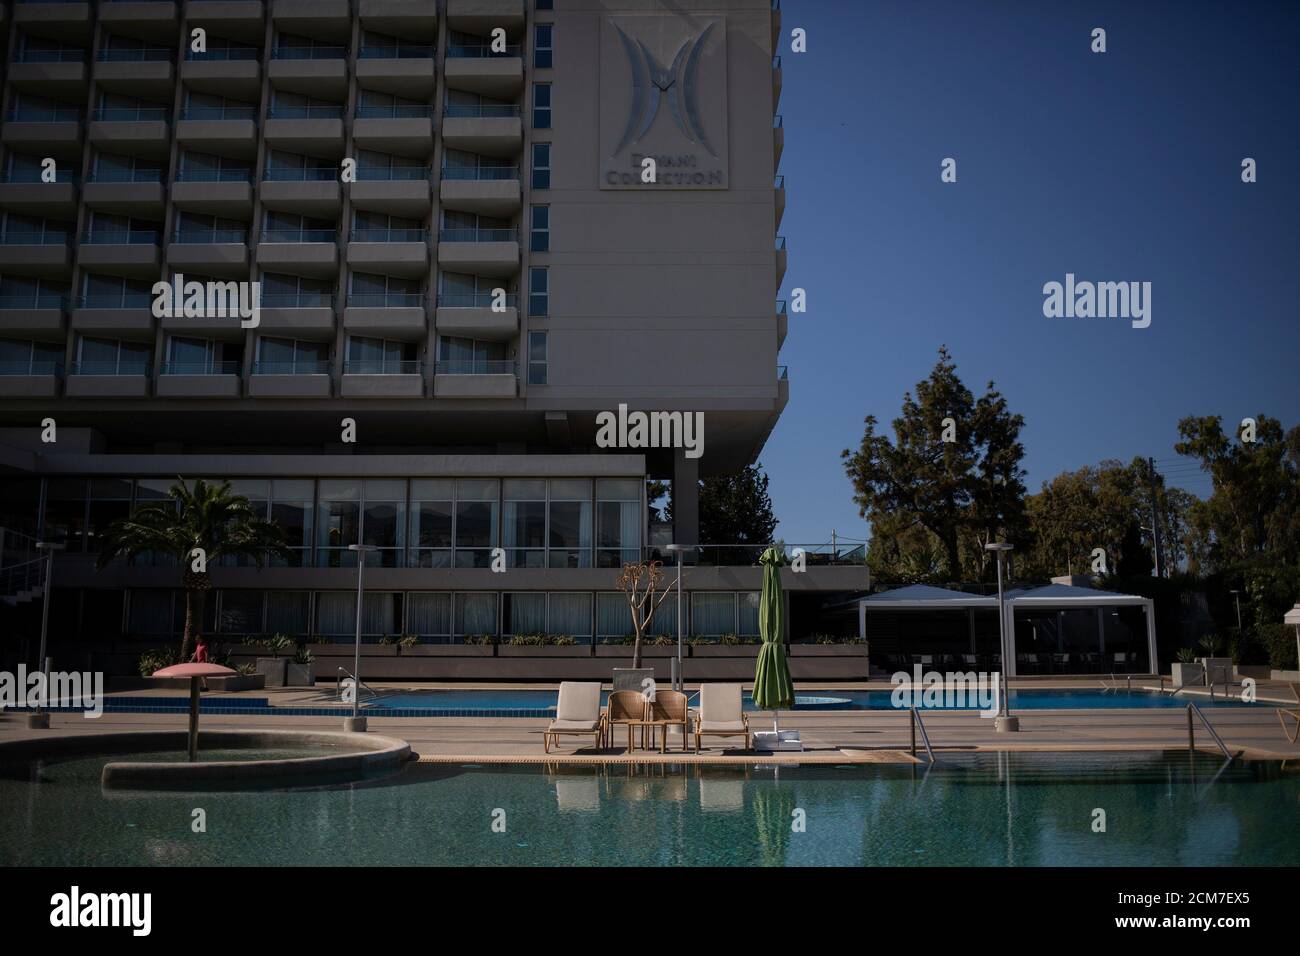 Des chaises longues sont situées à côté d'une piscine de l'hôtel Divani Apollon Palace, le premier jour de l'ouverture des hôtels en Grèce, suite à un confinement national contre la propagation de la maladie du coronavirus (COVID-19), à Athènes, Grèce, le 1er juin 2020. REUTERS/Almais Konstantinidis Banque D'Images